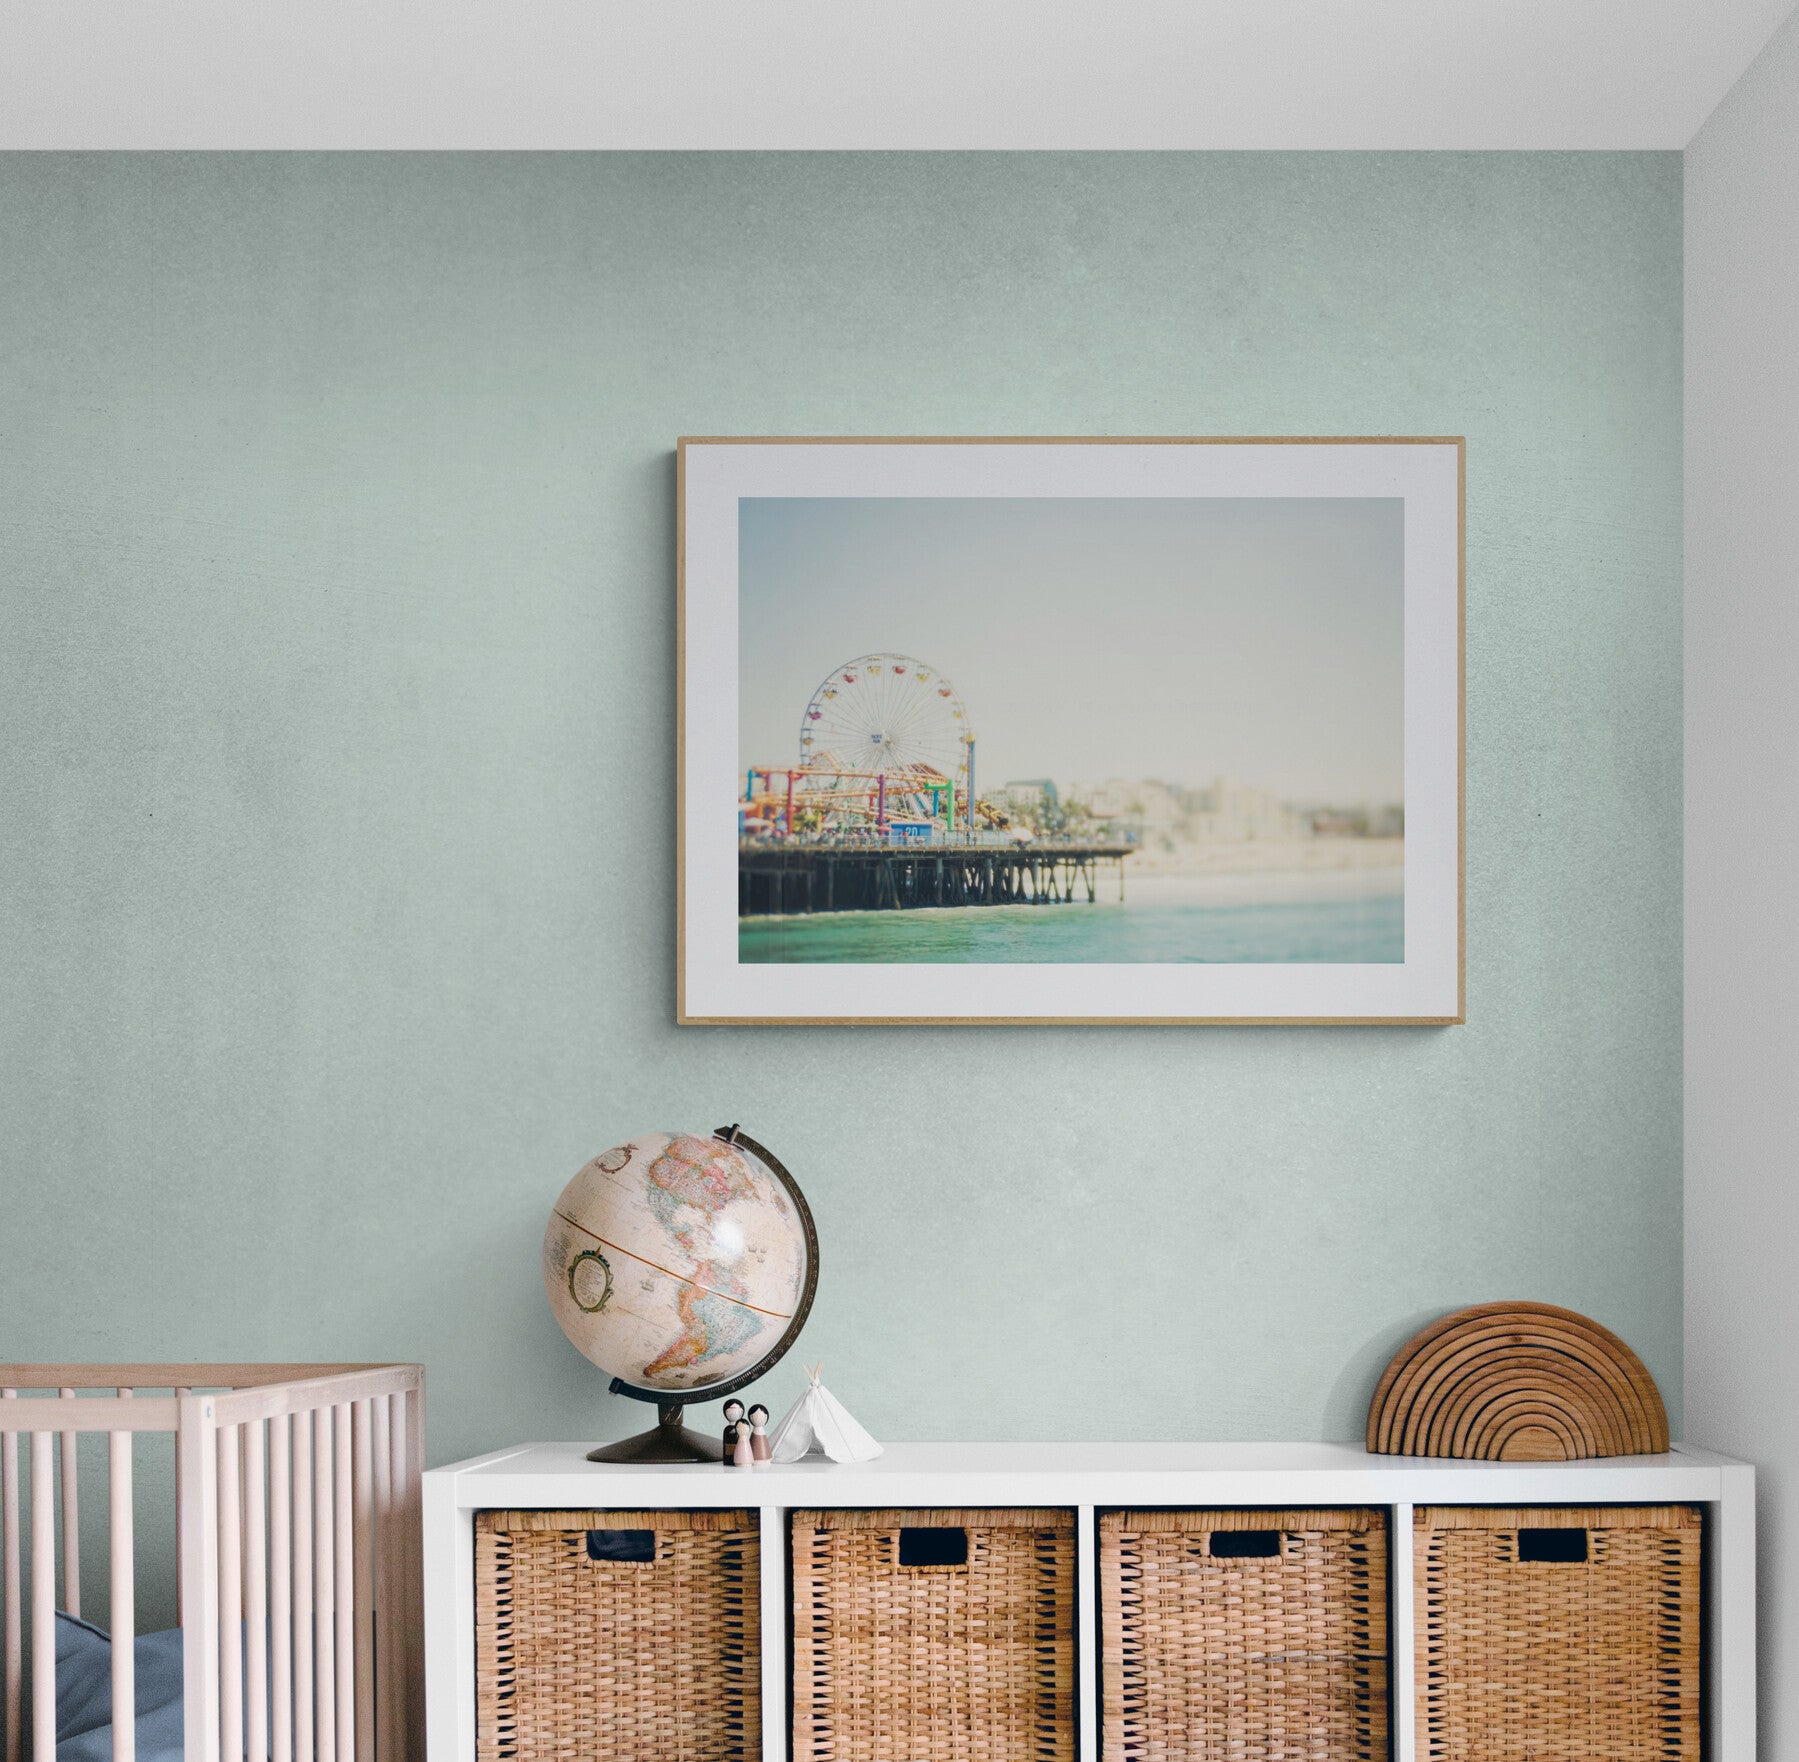 Santa Monica Pier Photograph Framed in a Nursery with Neutral Tonesathroom